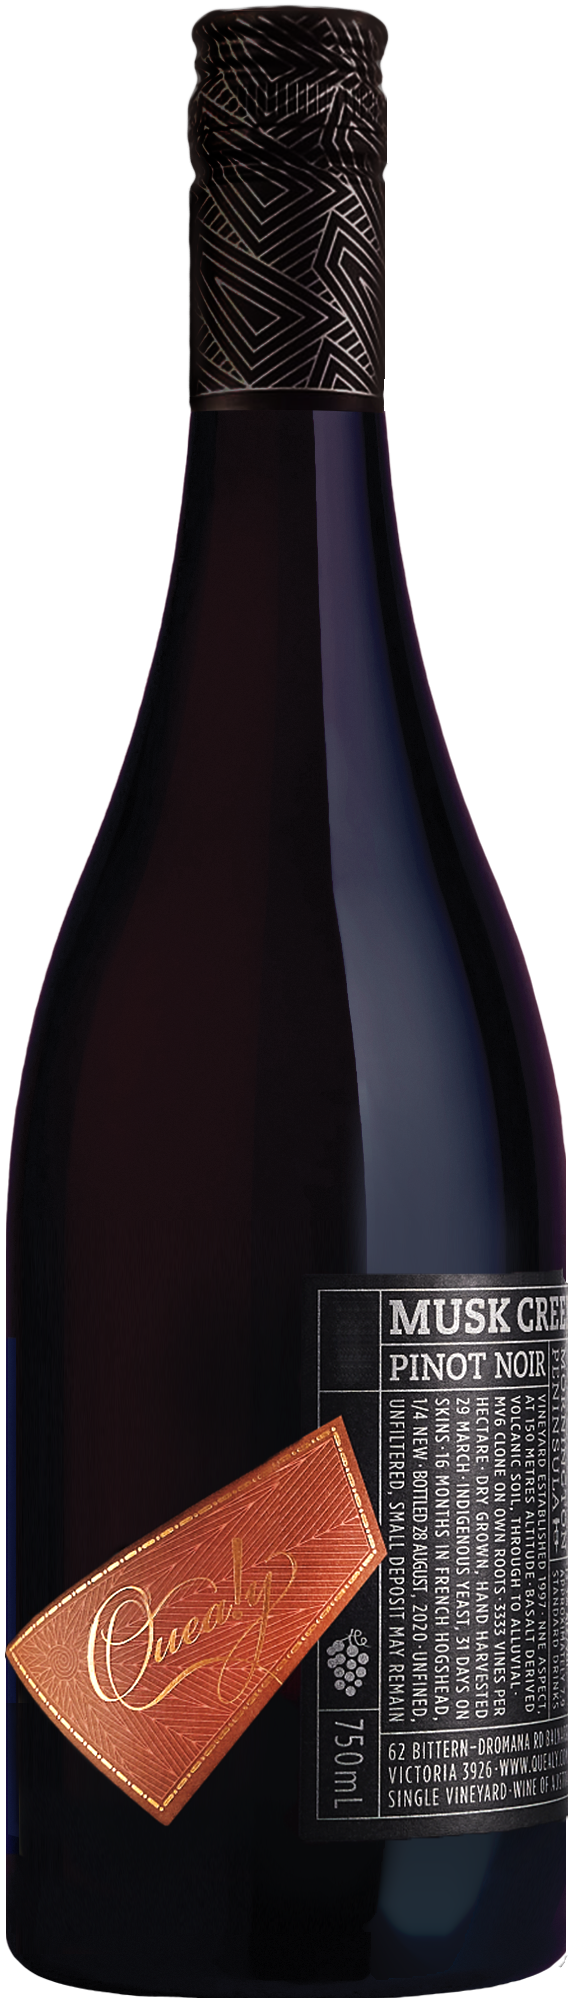 Quealy Musk Creek Pinot Noir 2021